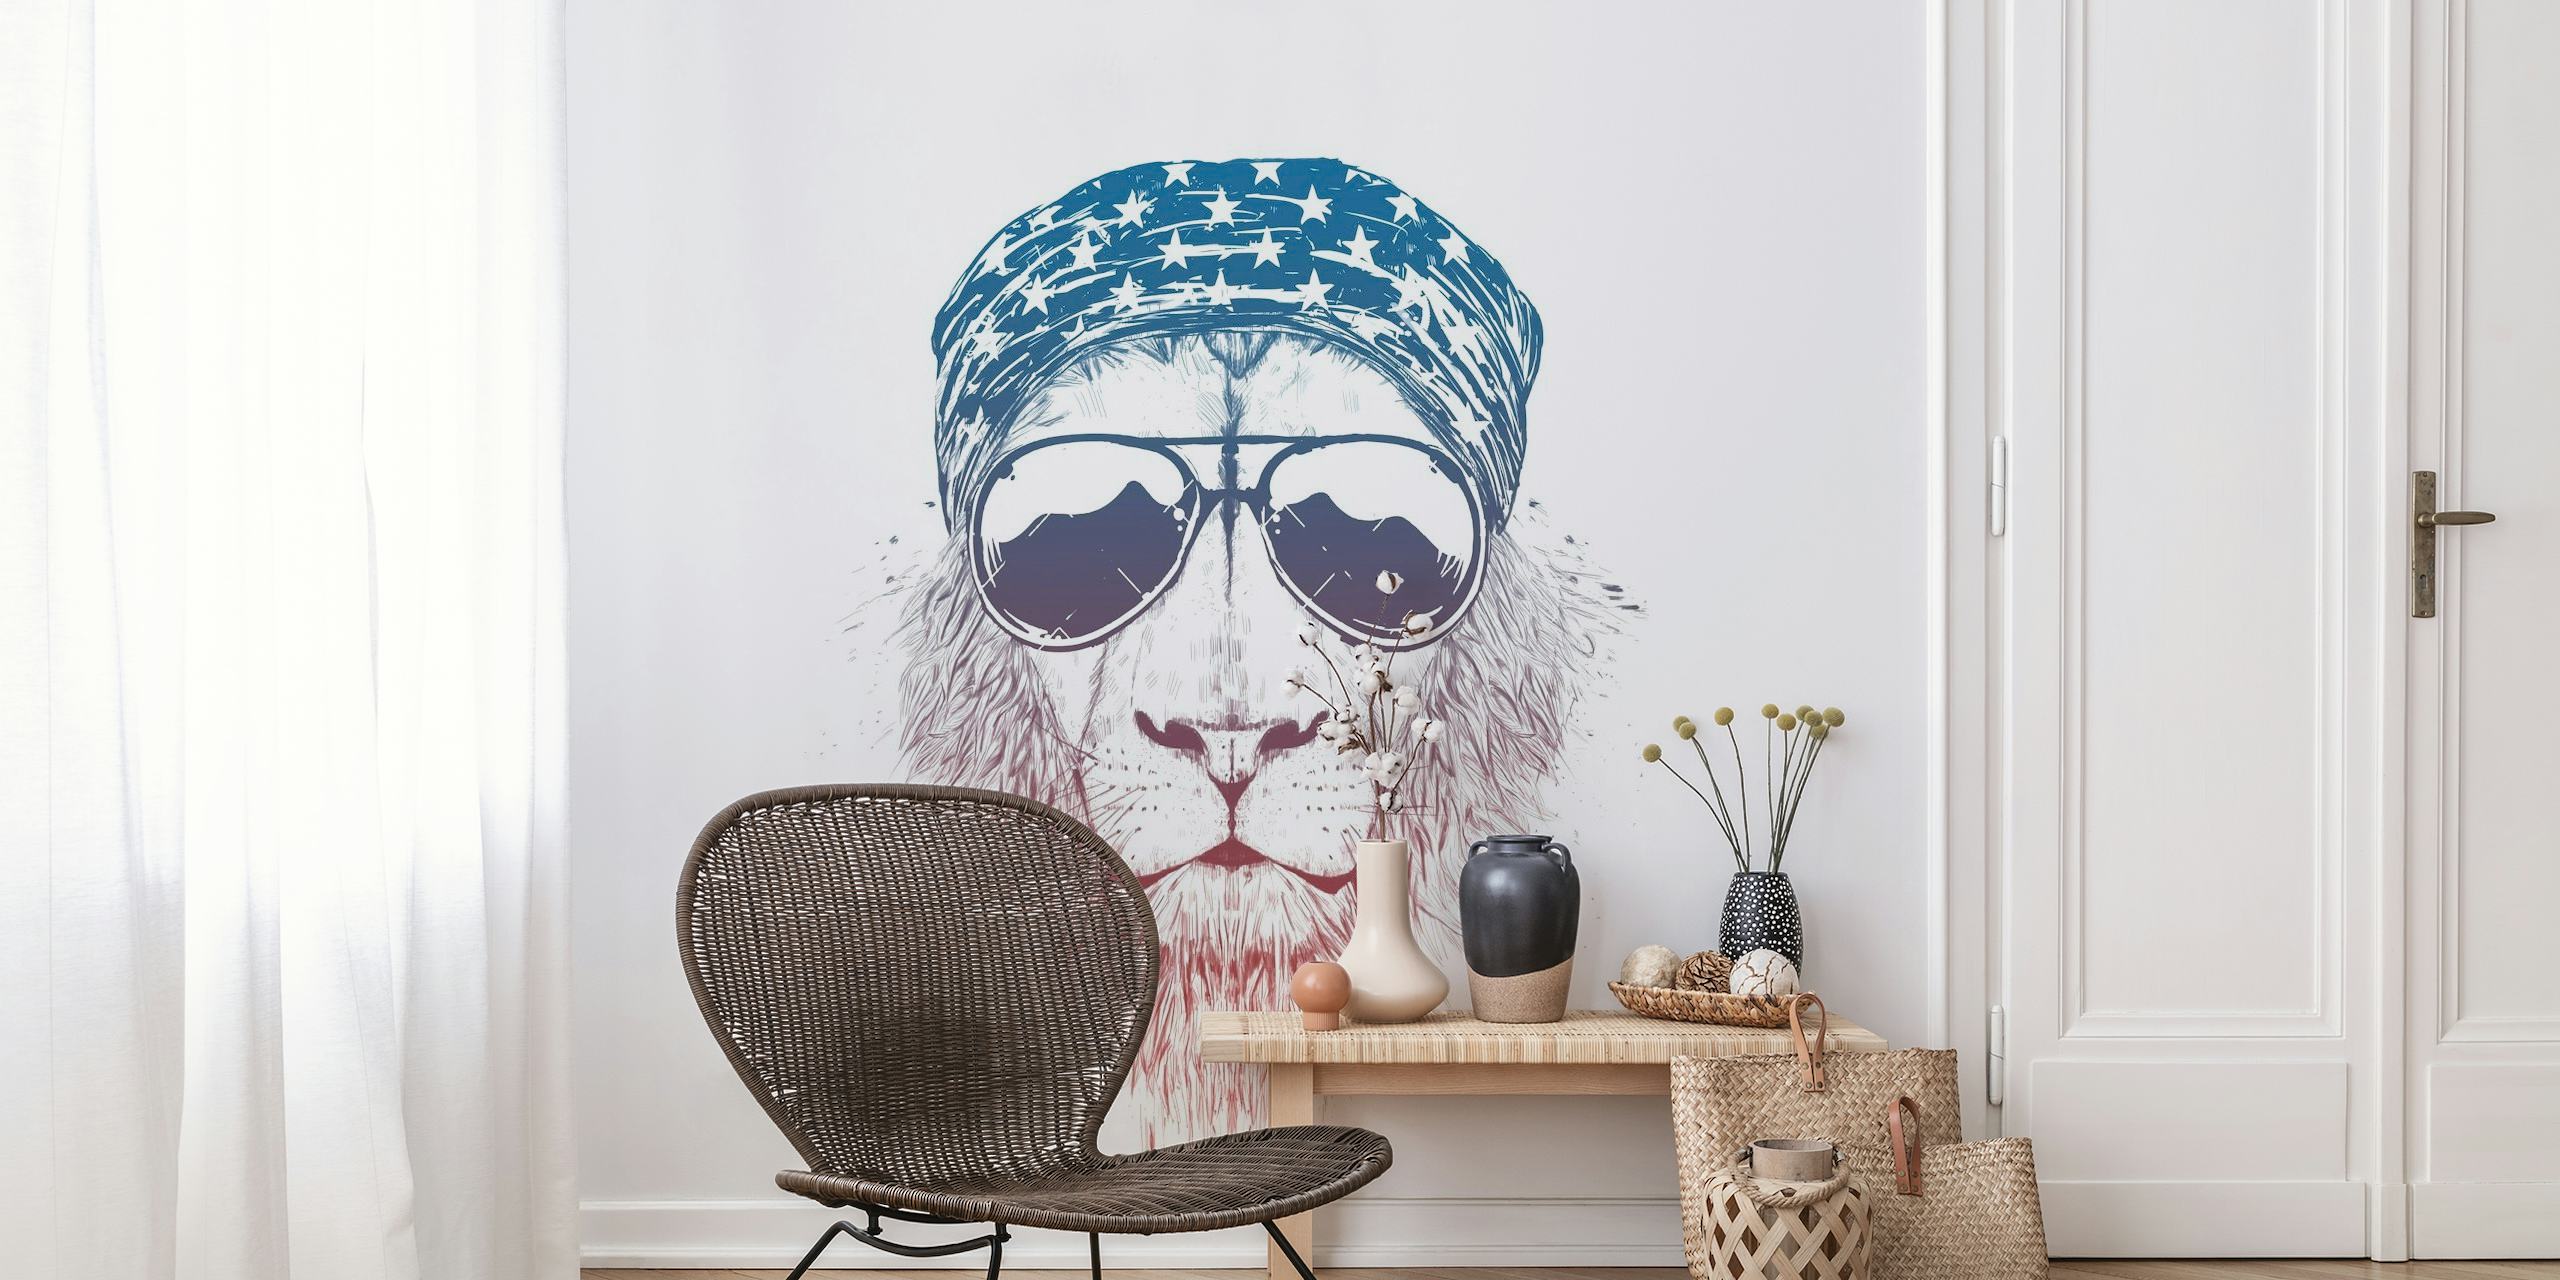 Stilisiertes Wandbild mit wildem Löwen, modernen grafischen Elementen und coolem Auftreten